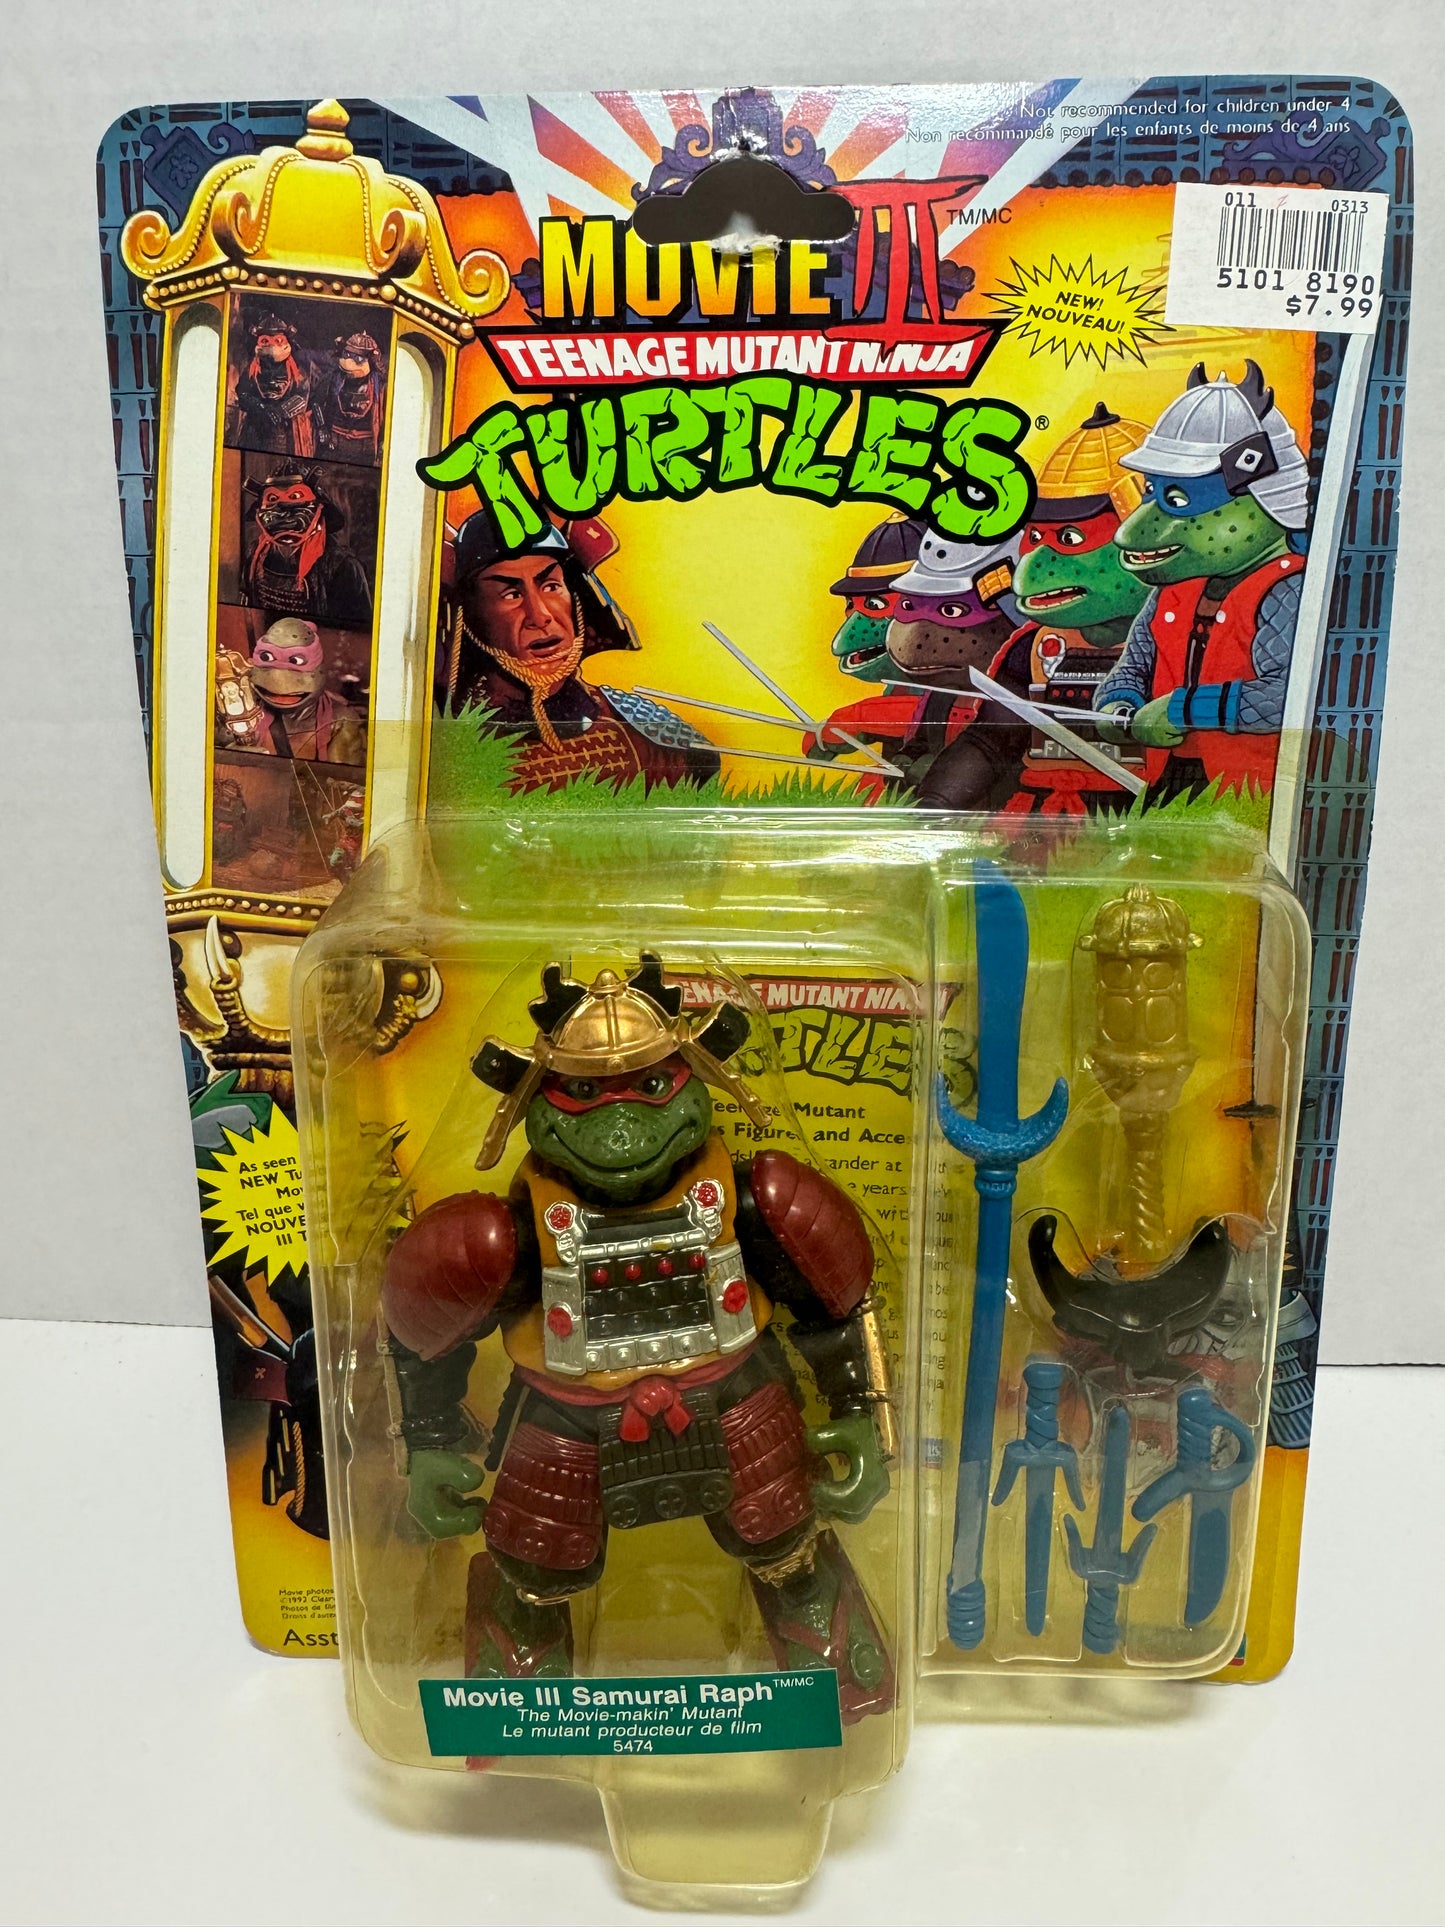 Teenage Mutant Ninja Turtles Movie III Samurai Raph